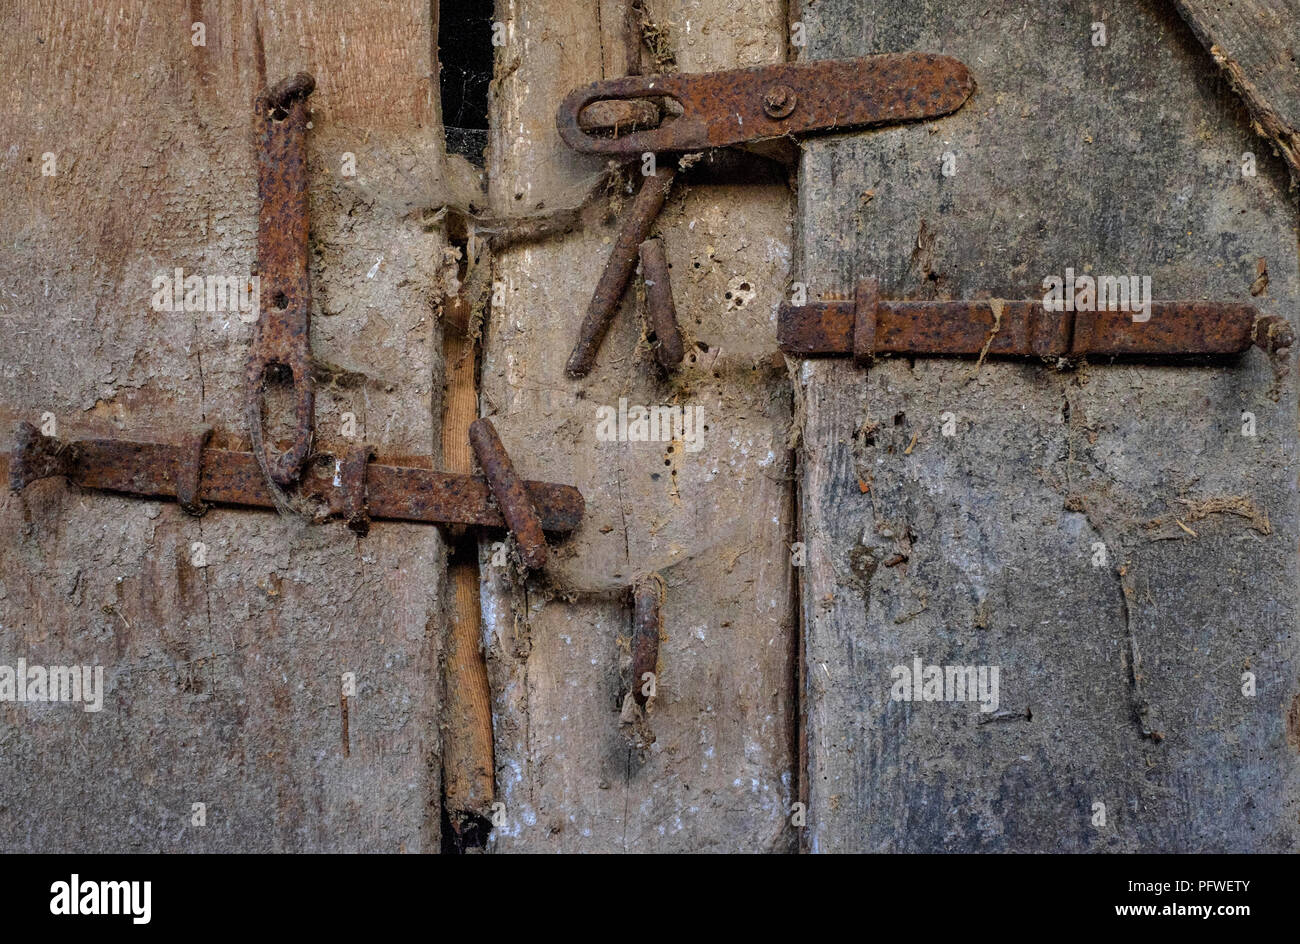 Alten rostigen Scharniere Klammern und Spangen auf der Tür von einem nebengebäude Zala Ungarn Stockfoto